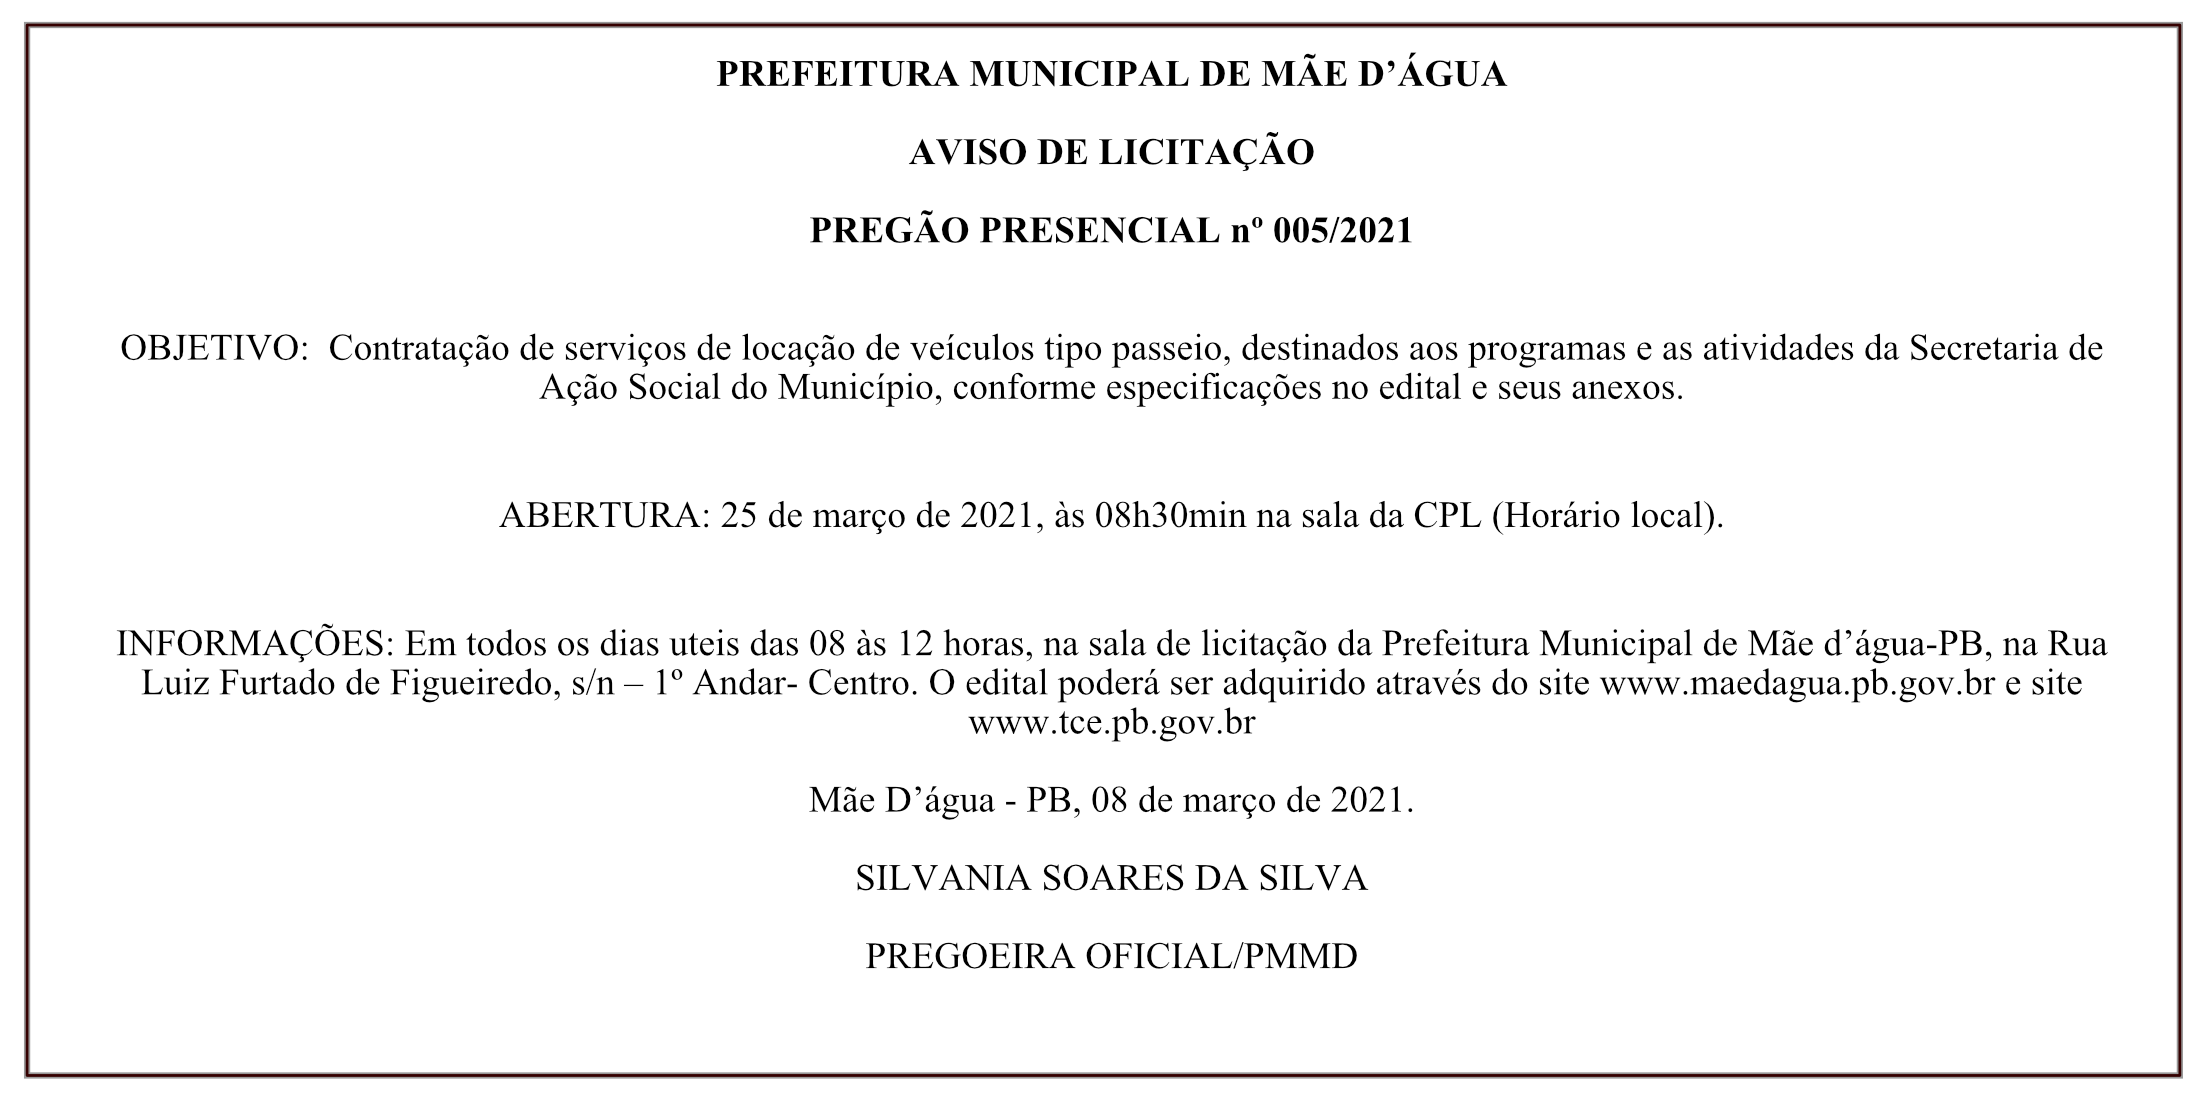 PREFEITURA MUNICIPAL DE MÃE D’ÁGUA – AVISO DE LICITAÇÃO – PREGÃO PRESENCIAL Nº 005/2021